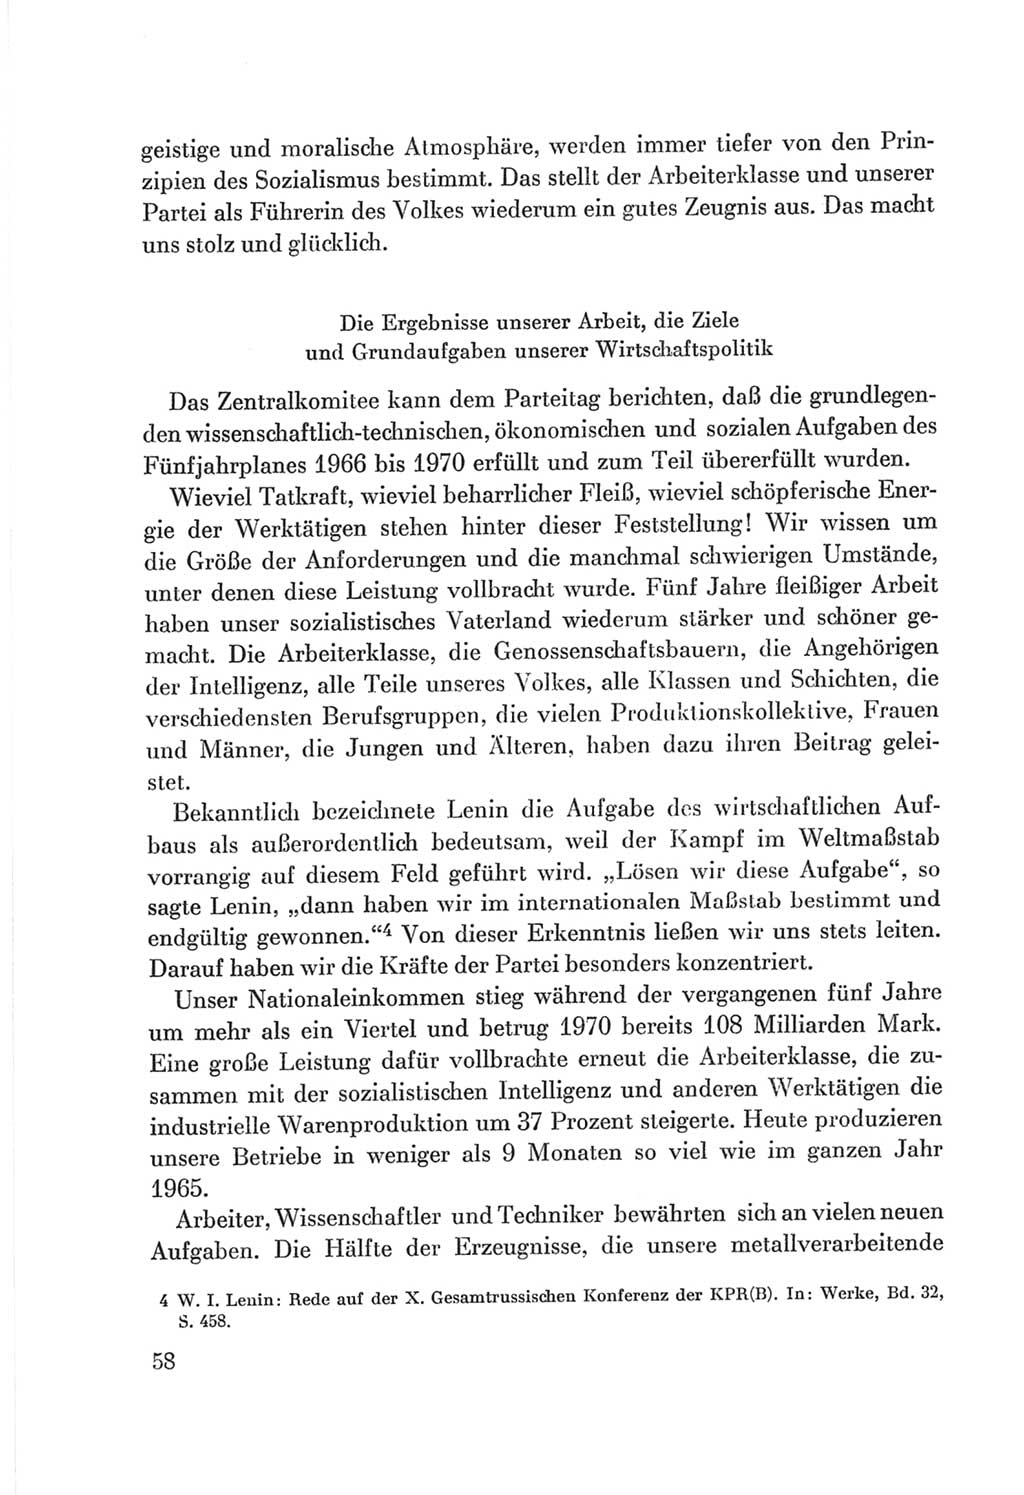 Protokoll der Verhandlungen des Ⅷ. Parteitages der Sozialistischen Einheitspartei Deutschlands (SED) [Deutsche Demokratische Republik (DDR)] 1971, Band 1, Seite 58 (Prot. Verh. Ⅷ. PT SED DDR 1971, Bd. 1, S. 58)